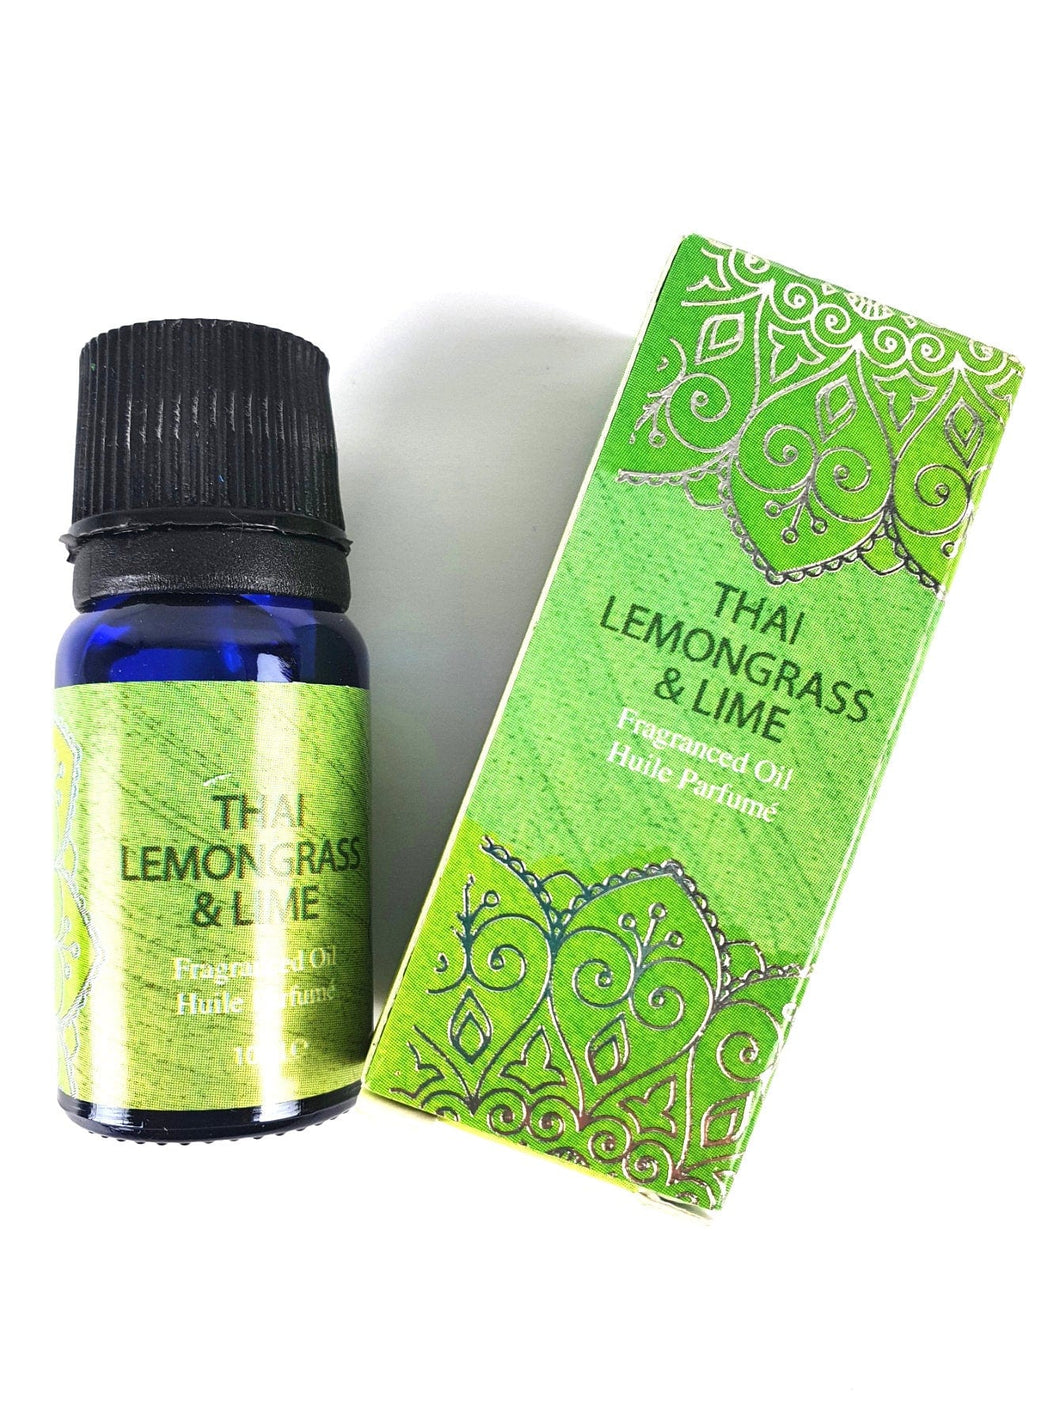 Thai Lemongrass & Lime Incense Oil 10ml FR1173 Unbranded